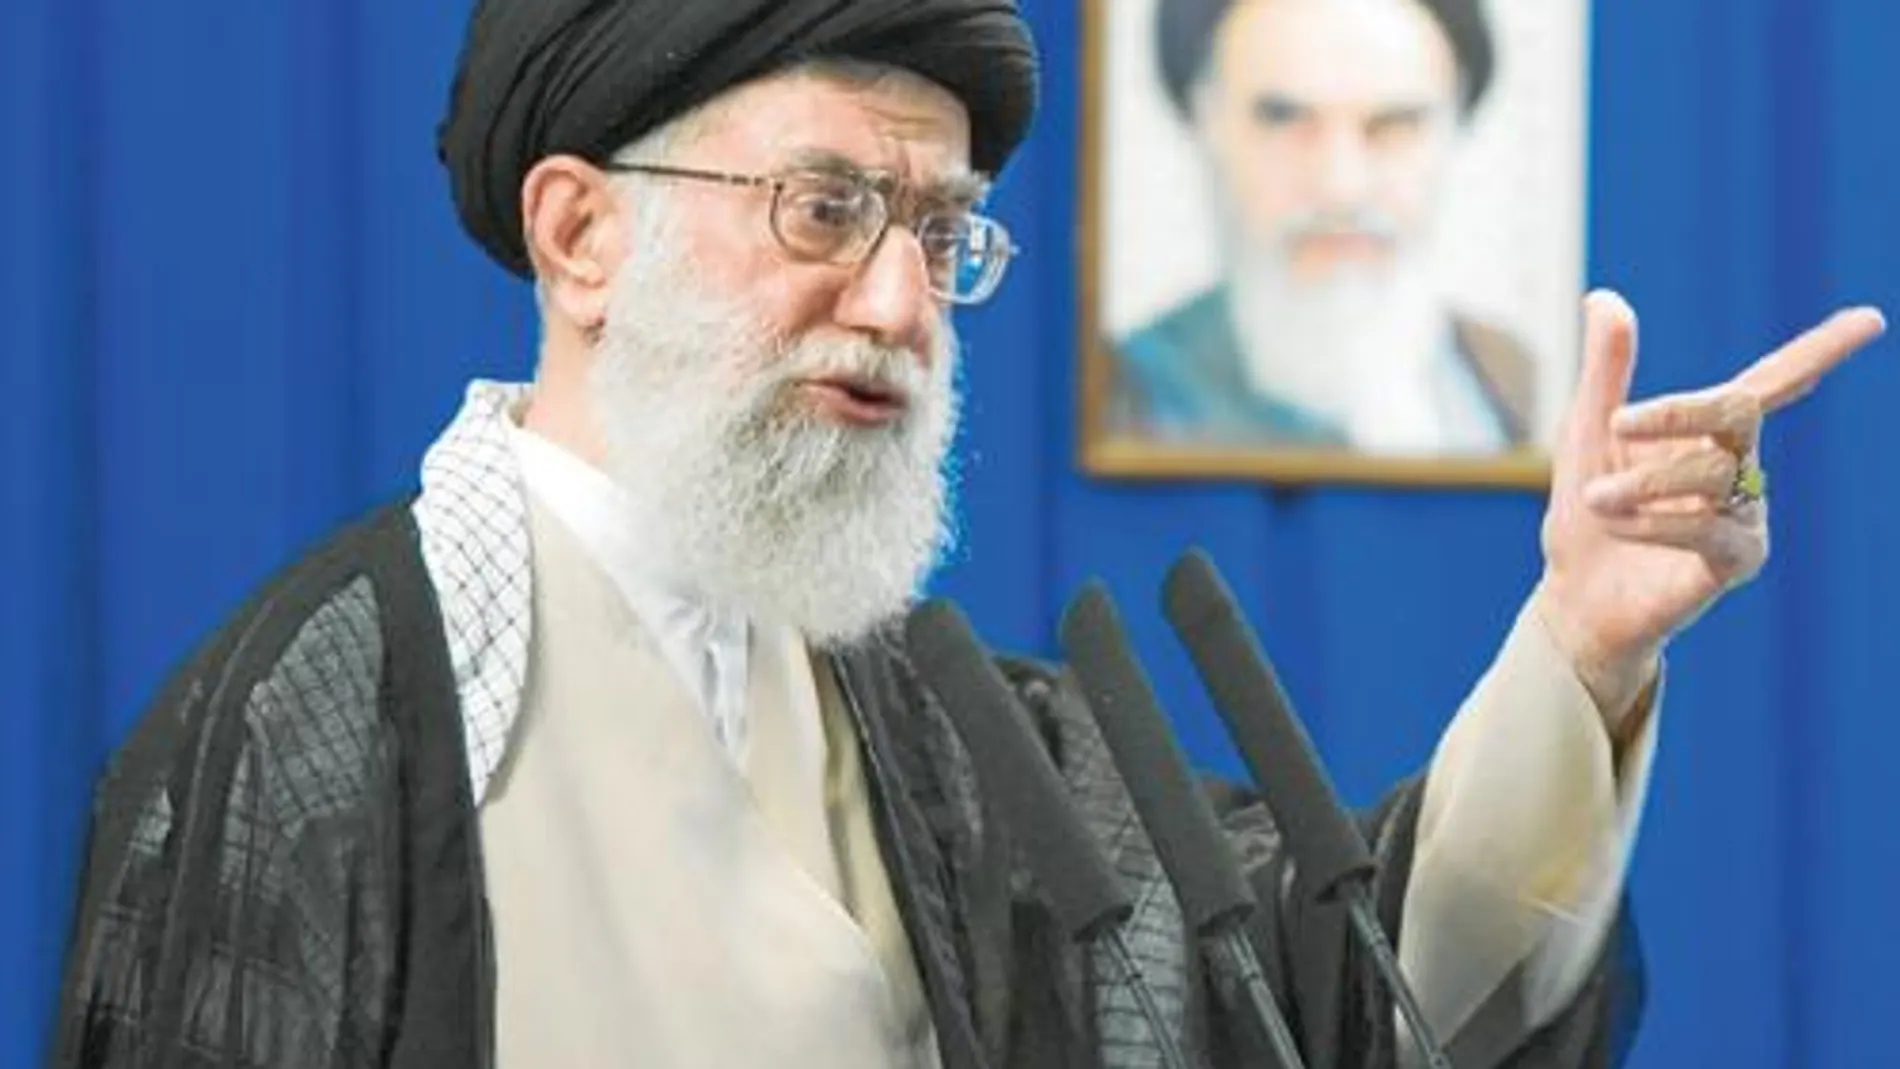 Jamenei exige el fin de las protestas